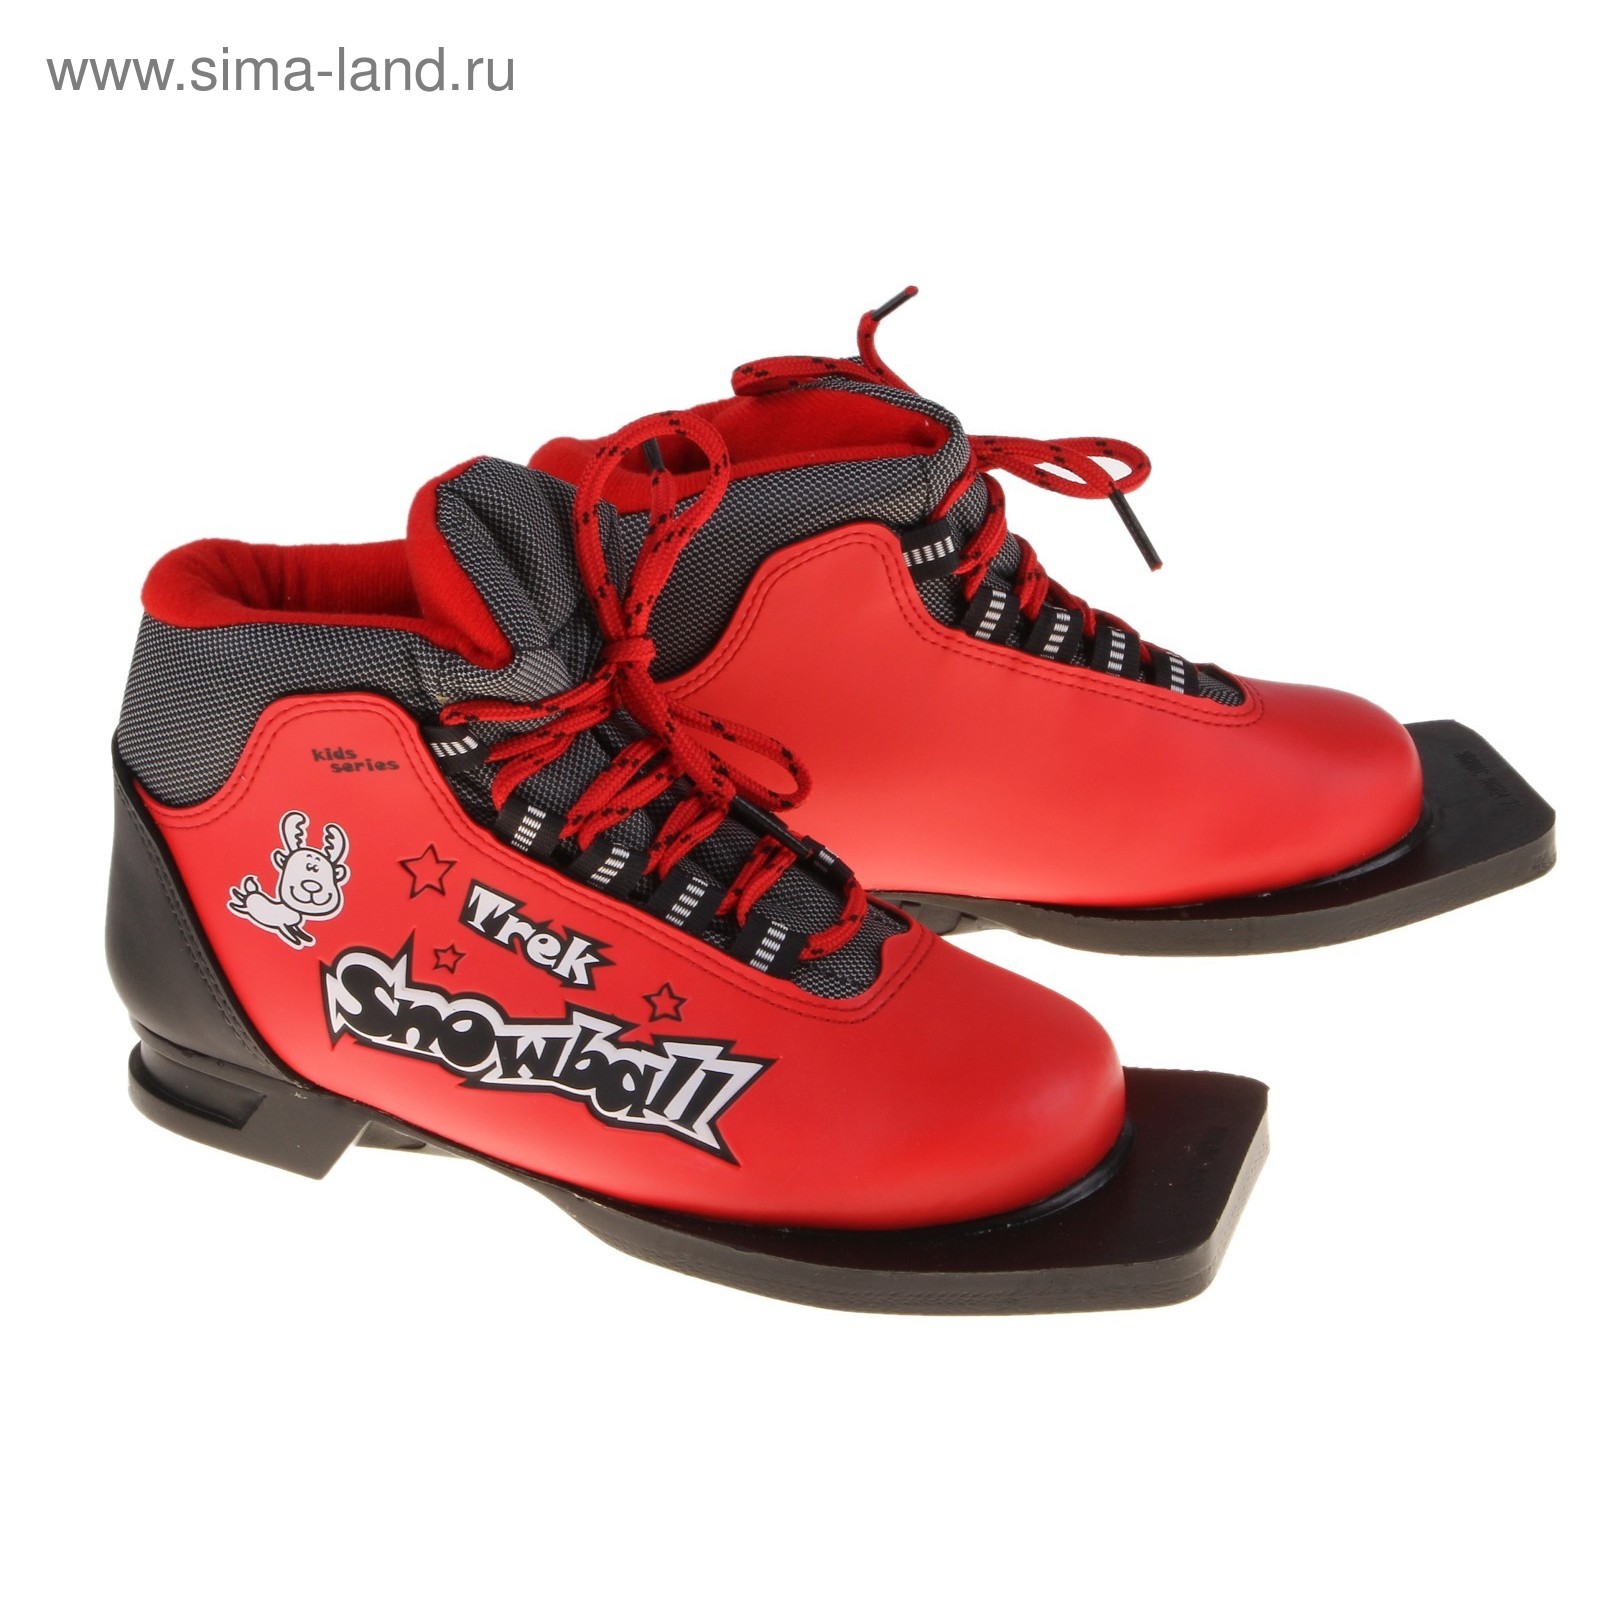 Ботинки лыжные TREK Snowball ИК, размер 37, цвет: красный